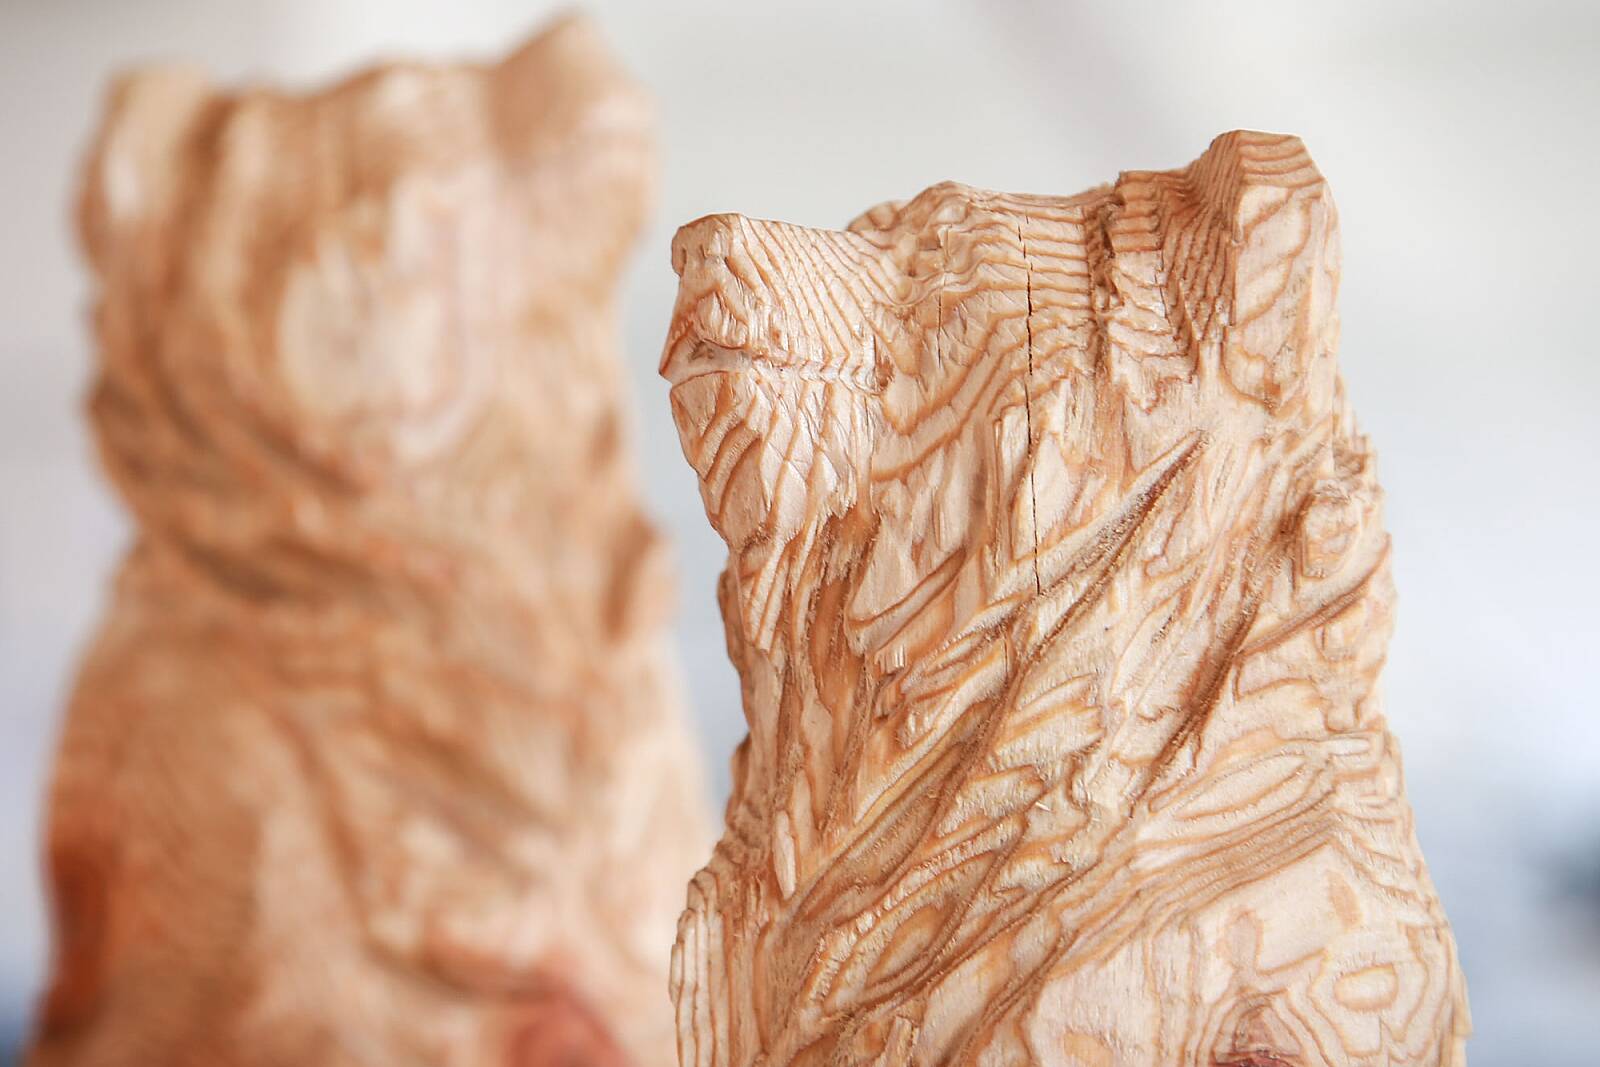 Bären in Lärchenholz mit Kettensäge geschaffen und Details geschnitzt